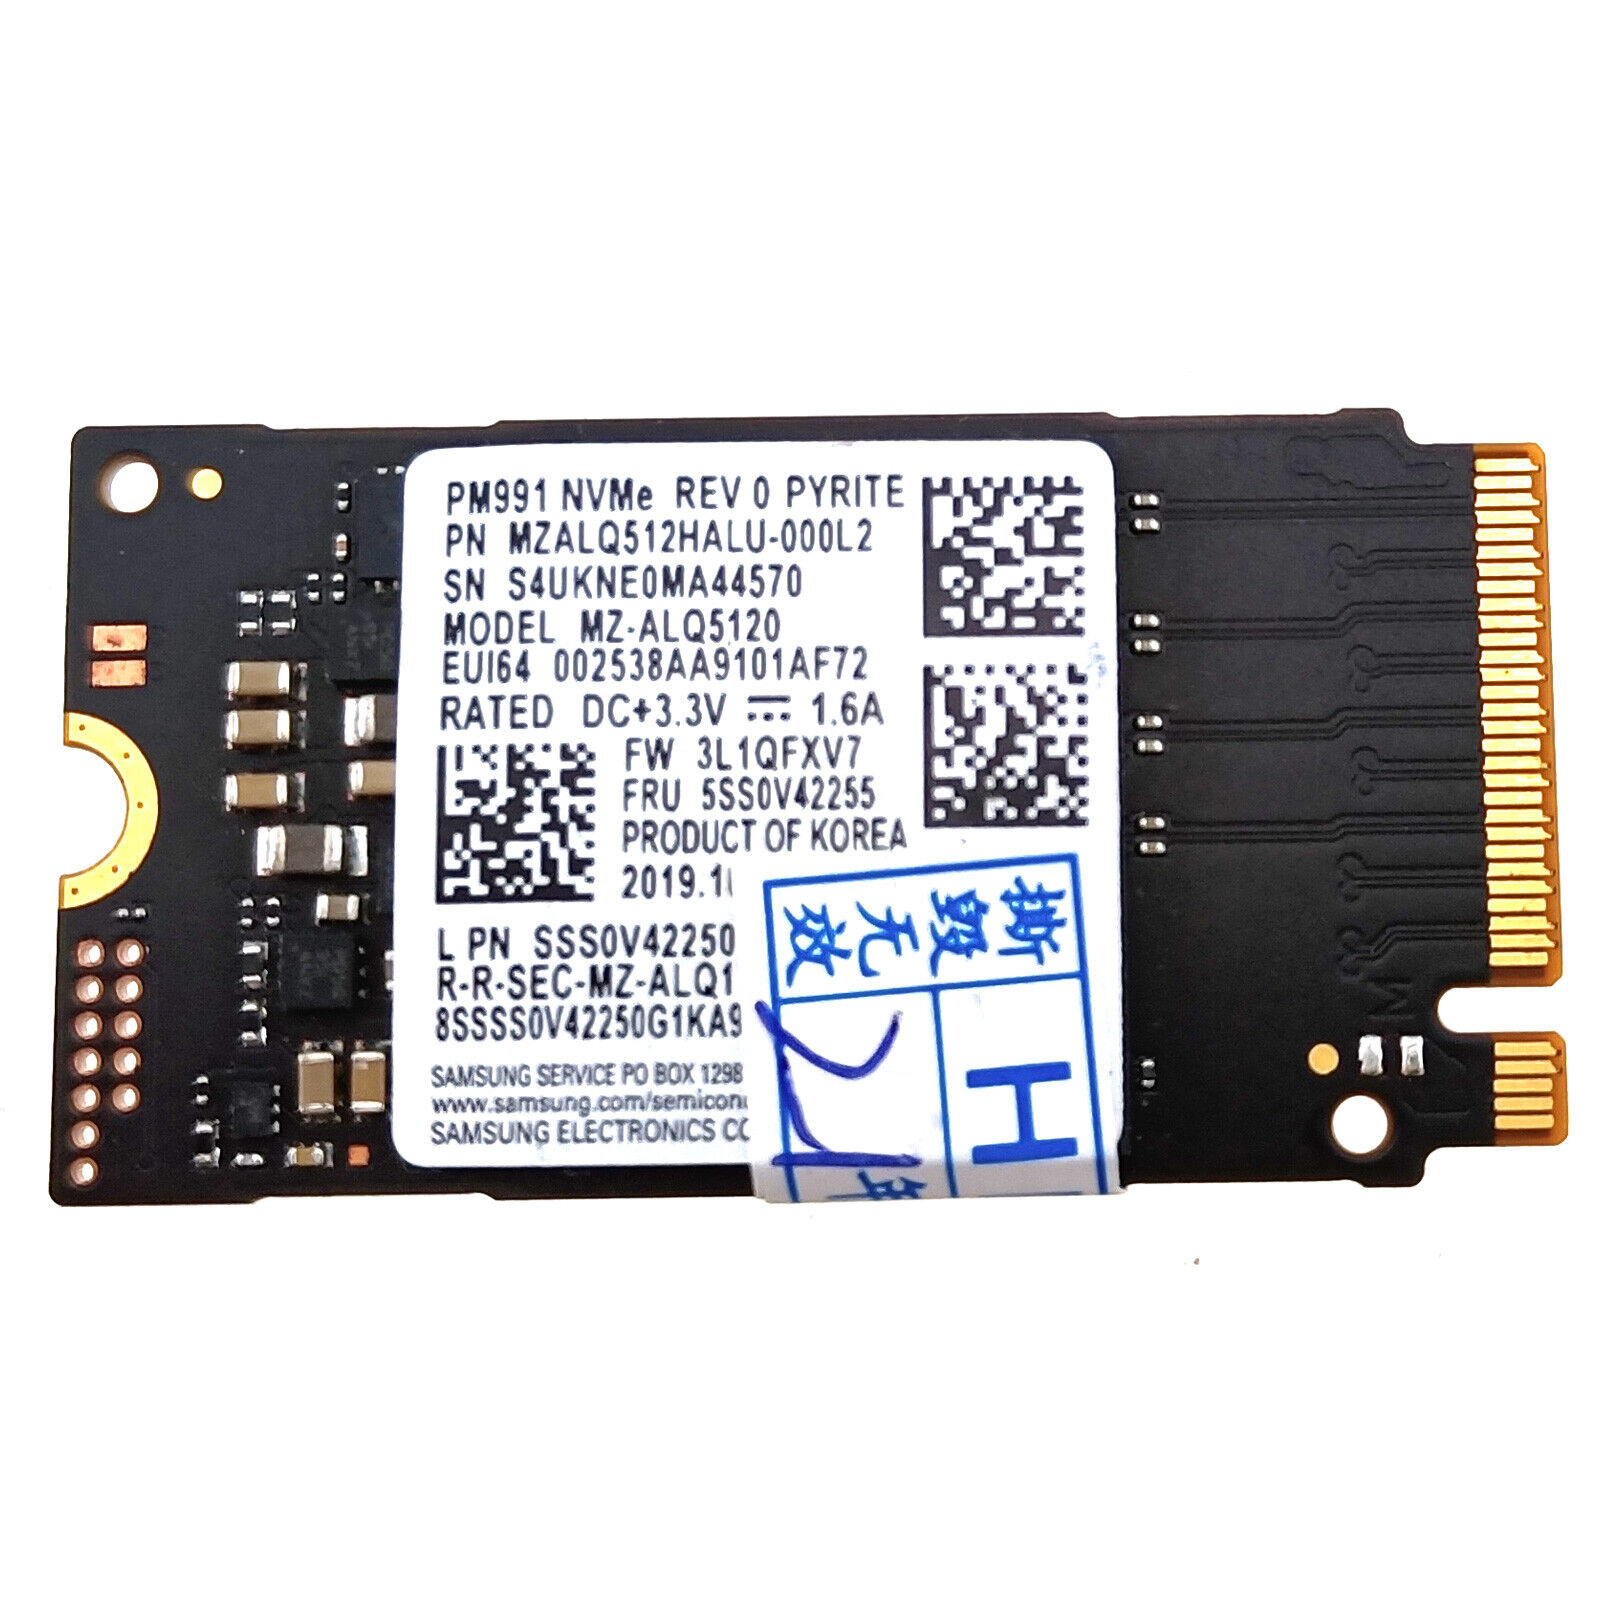 PM991 PCIe Gen3 x4 512GB NVMe M.2 2242 Solid State Drive SSD MZALQ512HALU-000L2